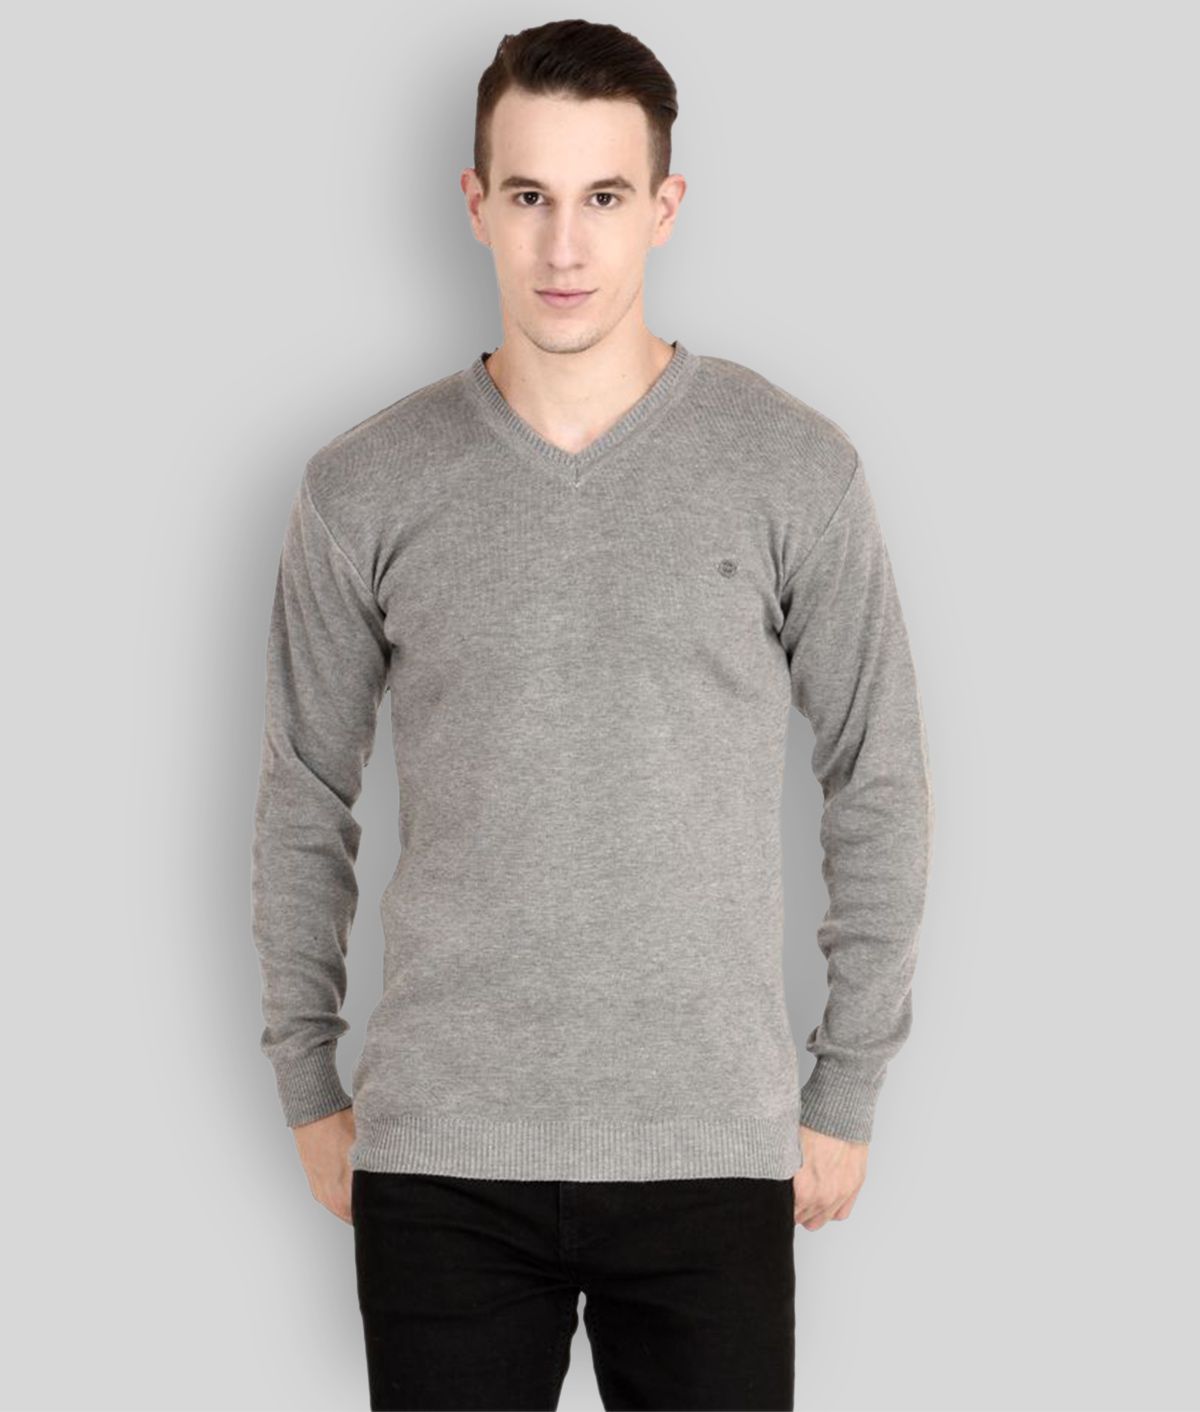     			Neuvin Grey V Neck Sweater